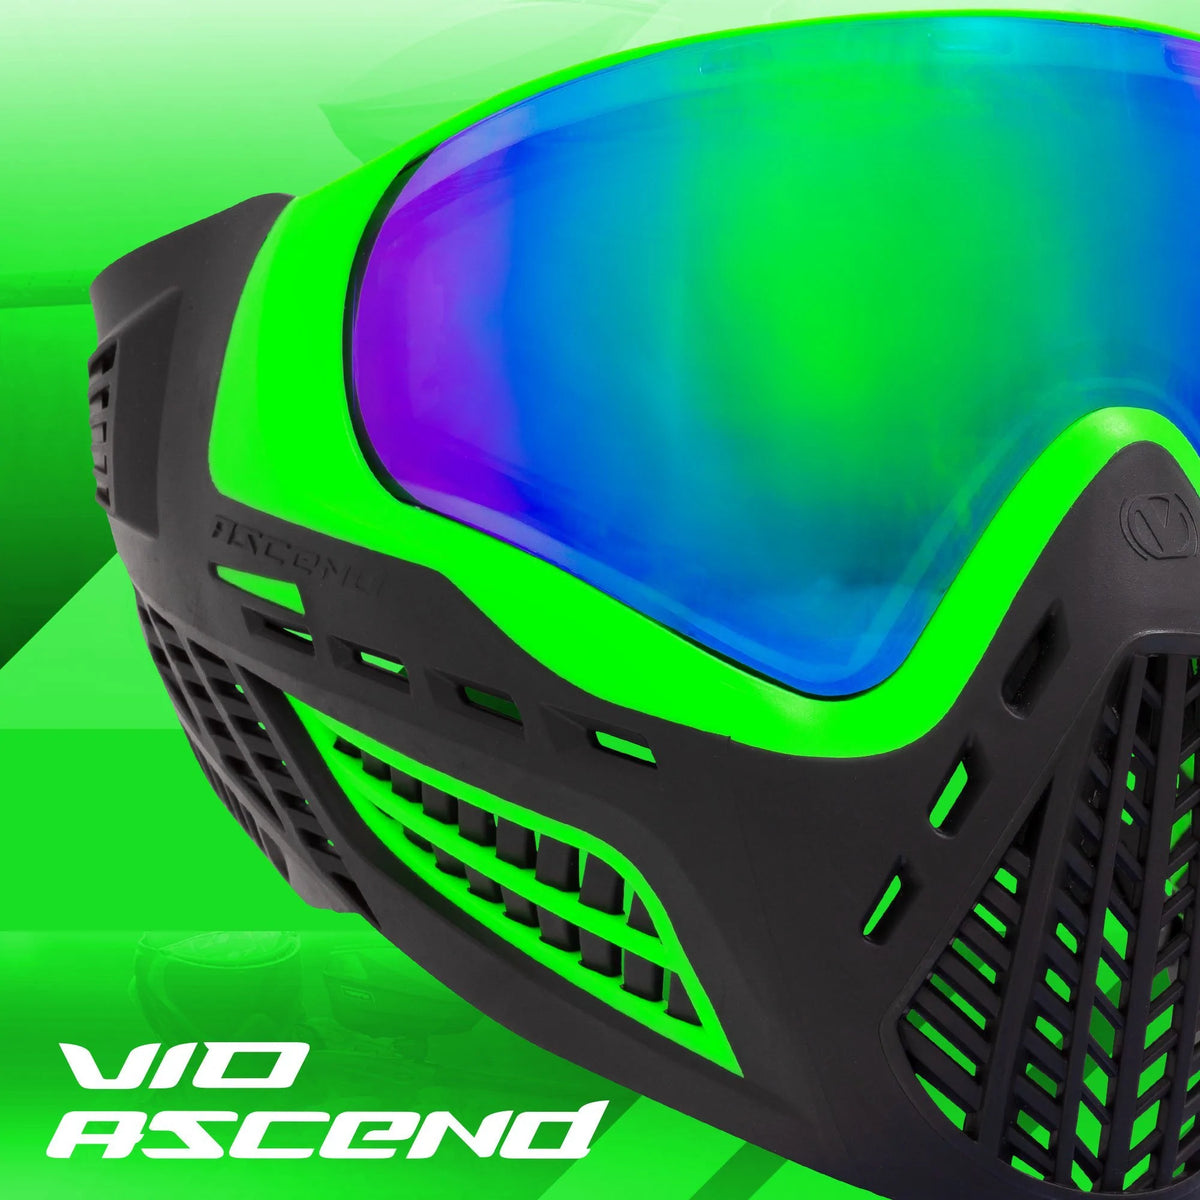 Virtue Vio Ascend Goggle - Lime Emerald